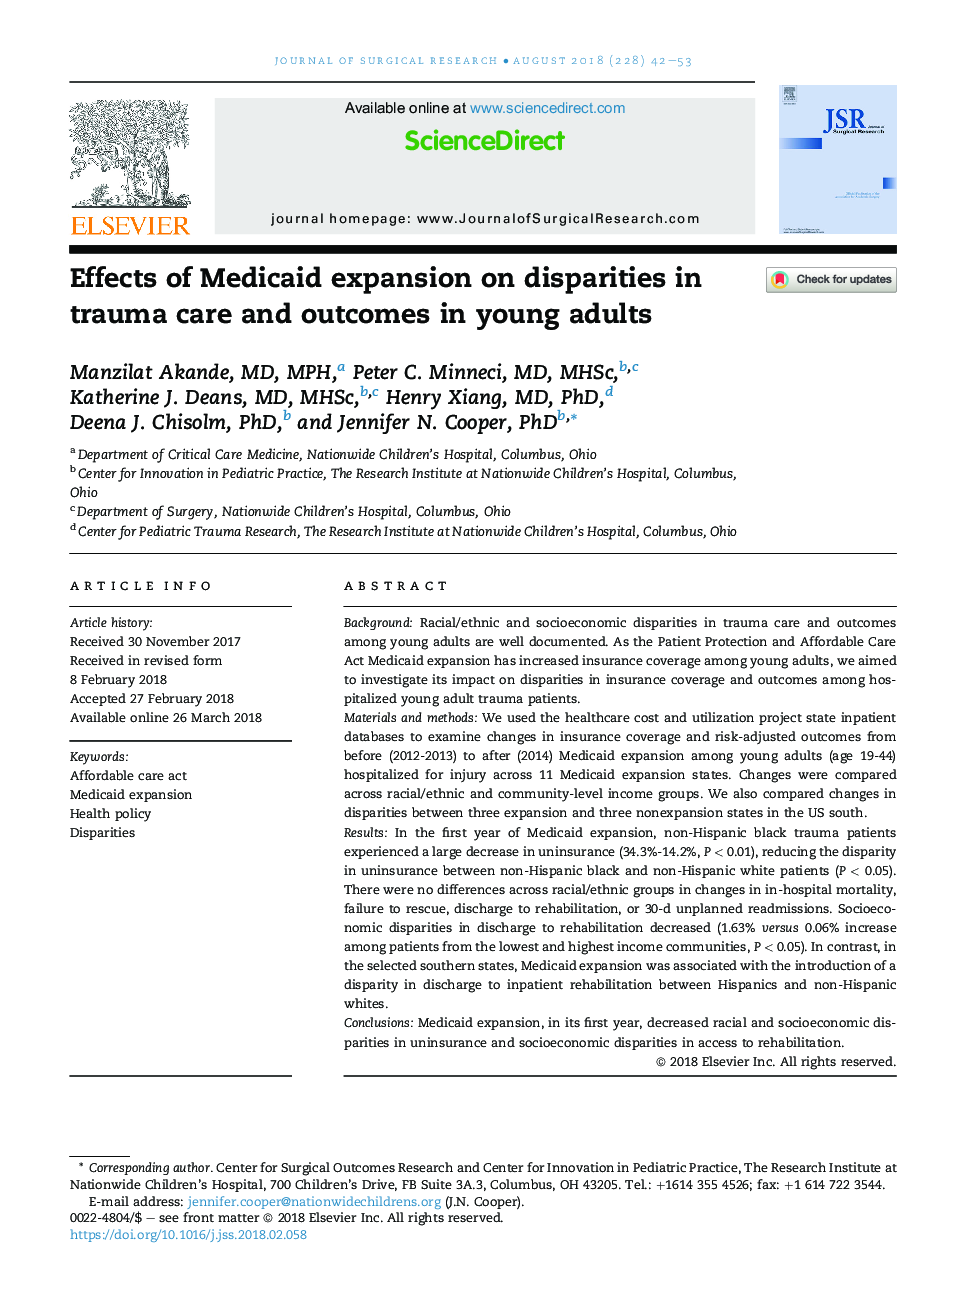 اثرات گسترش مدیکید بر تفاوت های مراقبت های تروما و پیامدهای آن در بزرگسالان جوان 